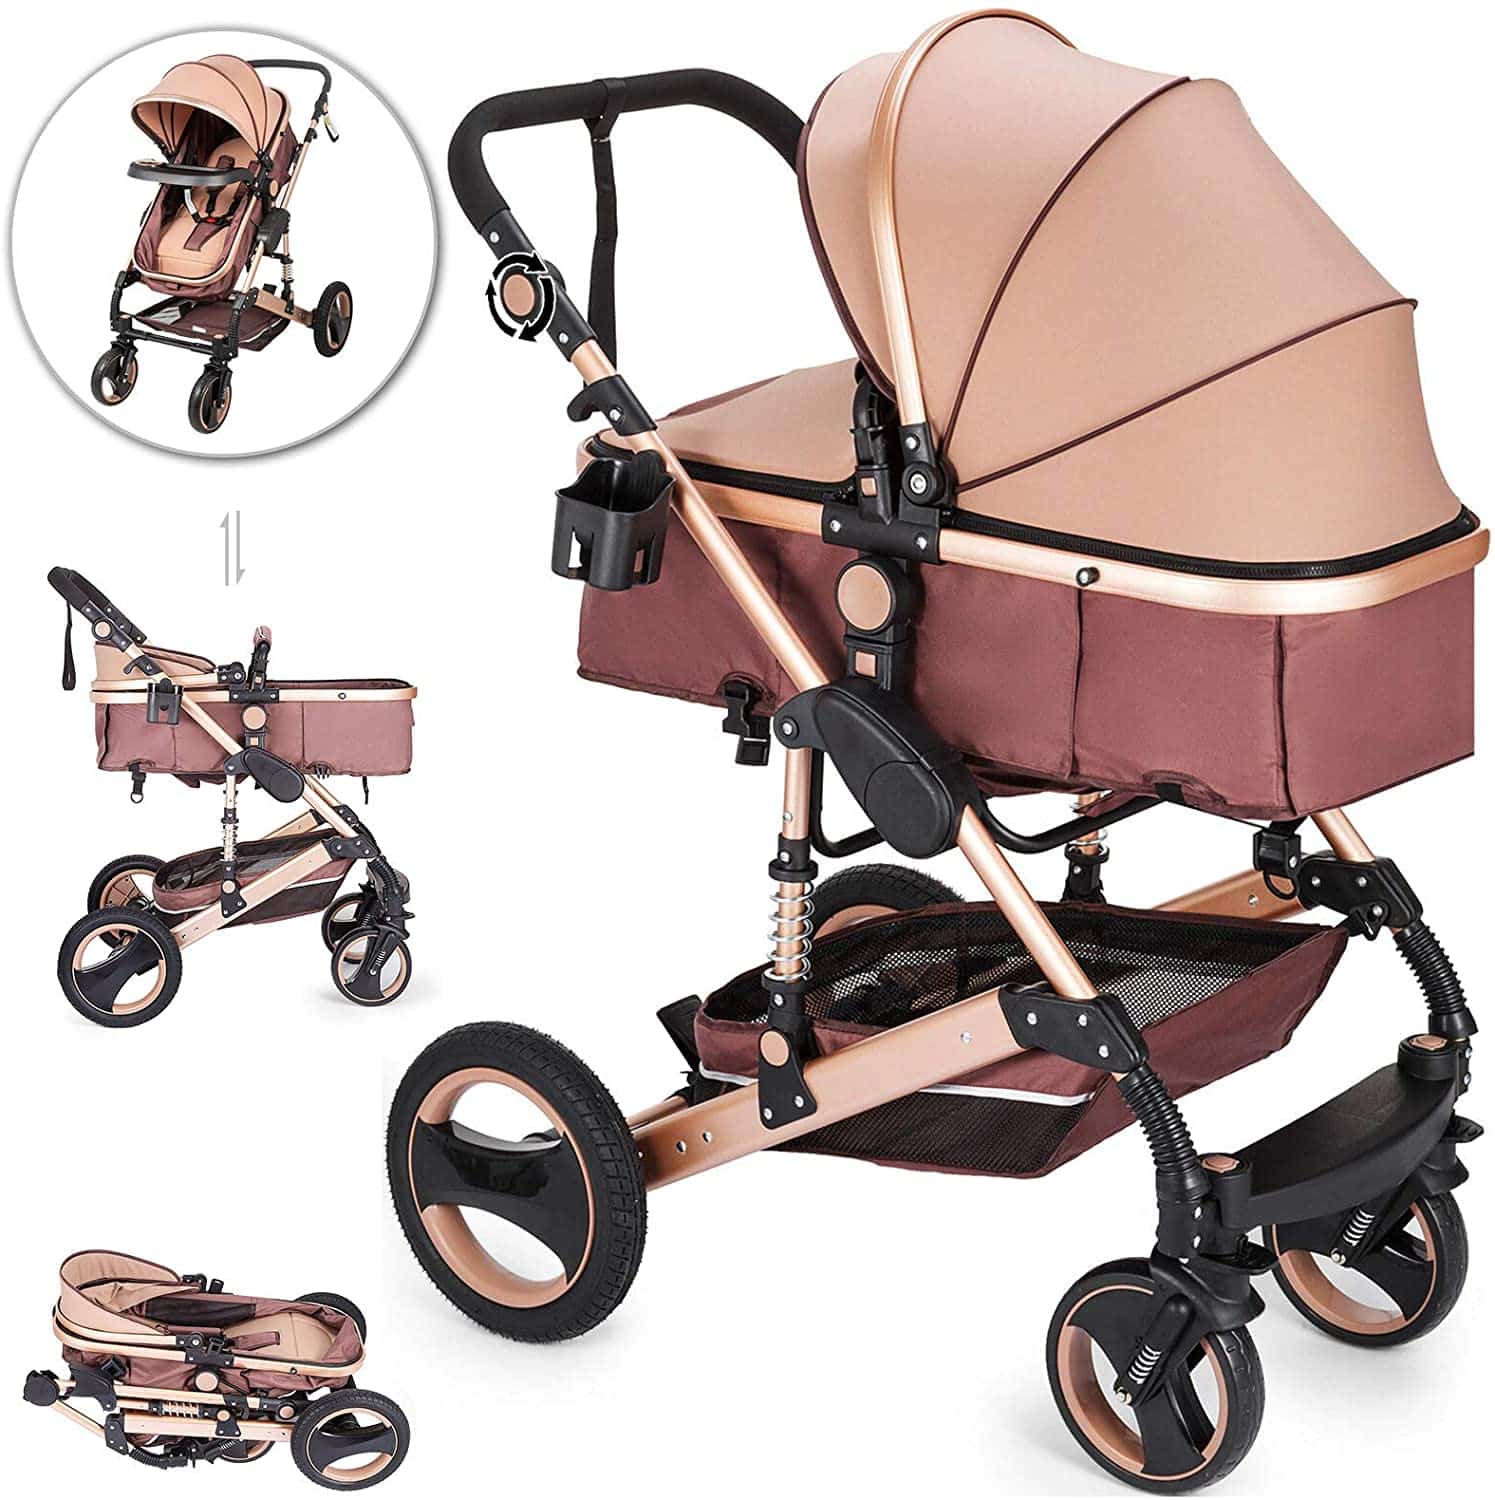 The best infant travel stroller 2021